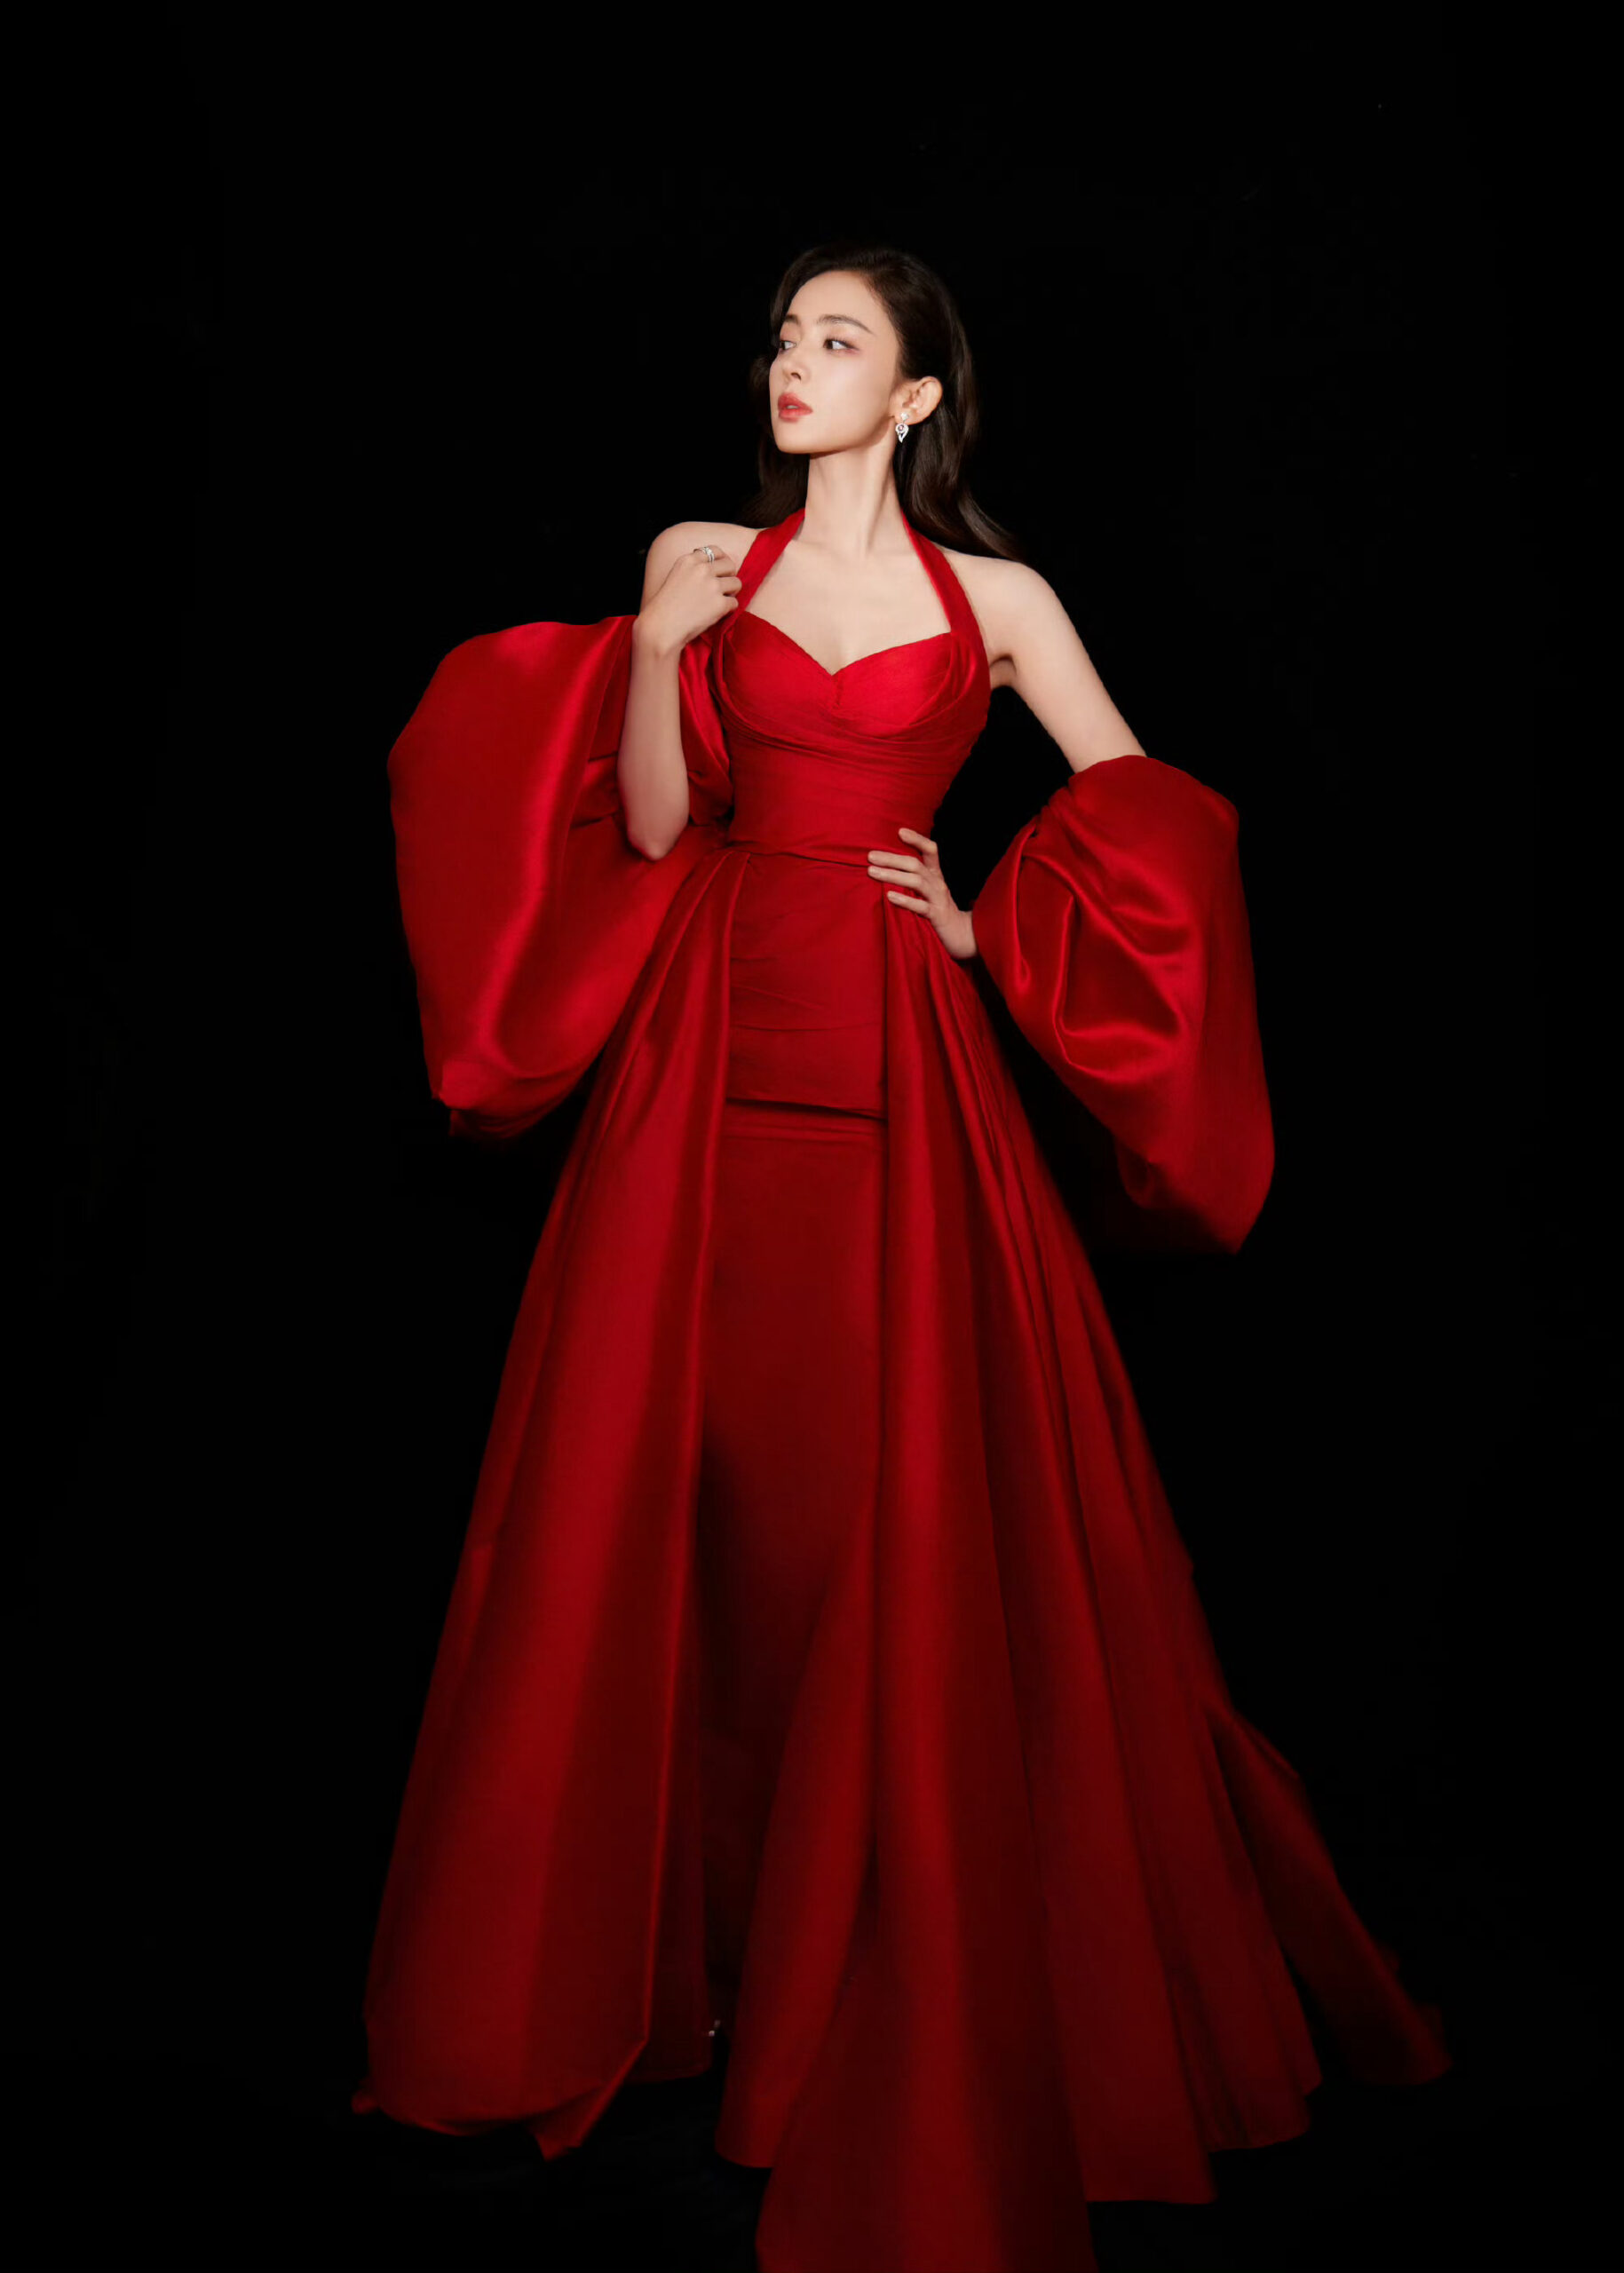 娜扎红玫瑰礼服造型明艳照人-幽兰花香